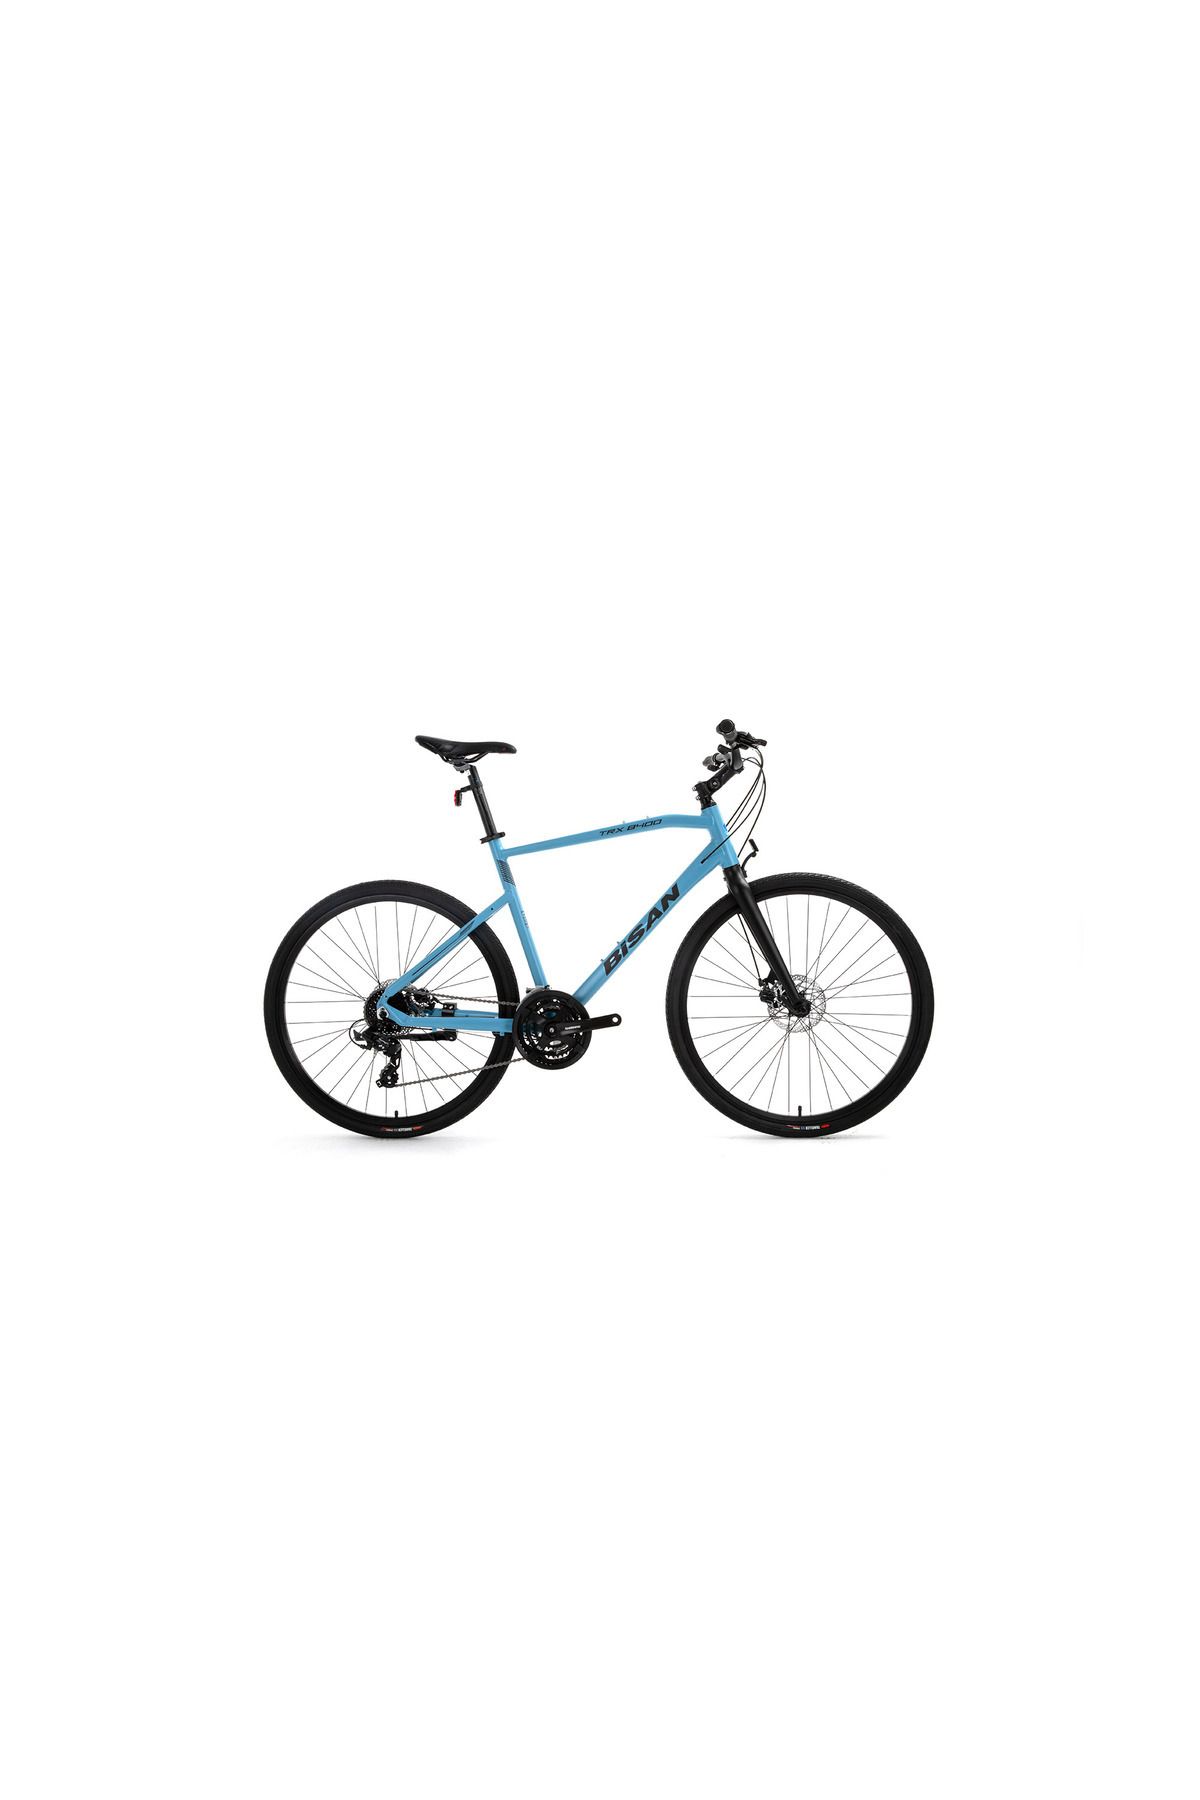 Bisan Trx 8400 Altus-24 Trekking Bisikletleri	50 Cm	700c	bebek Mavisi	siyah		3x9 Vites